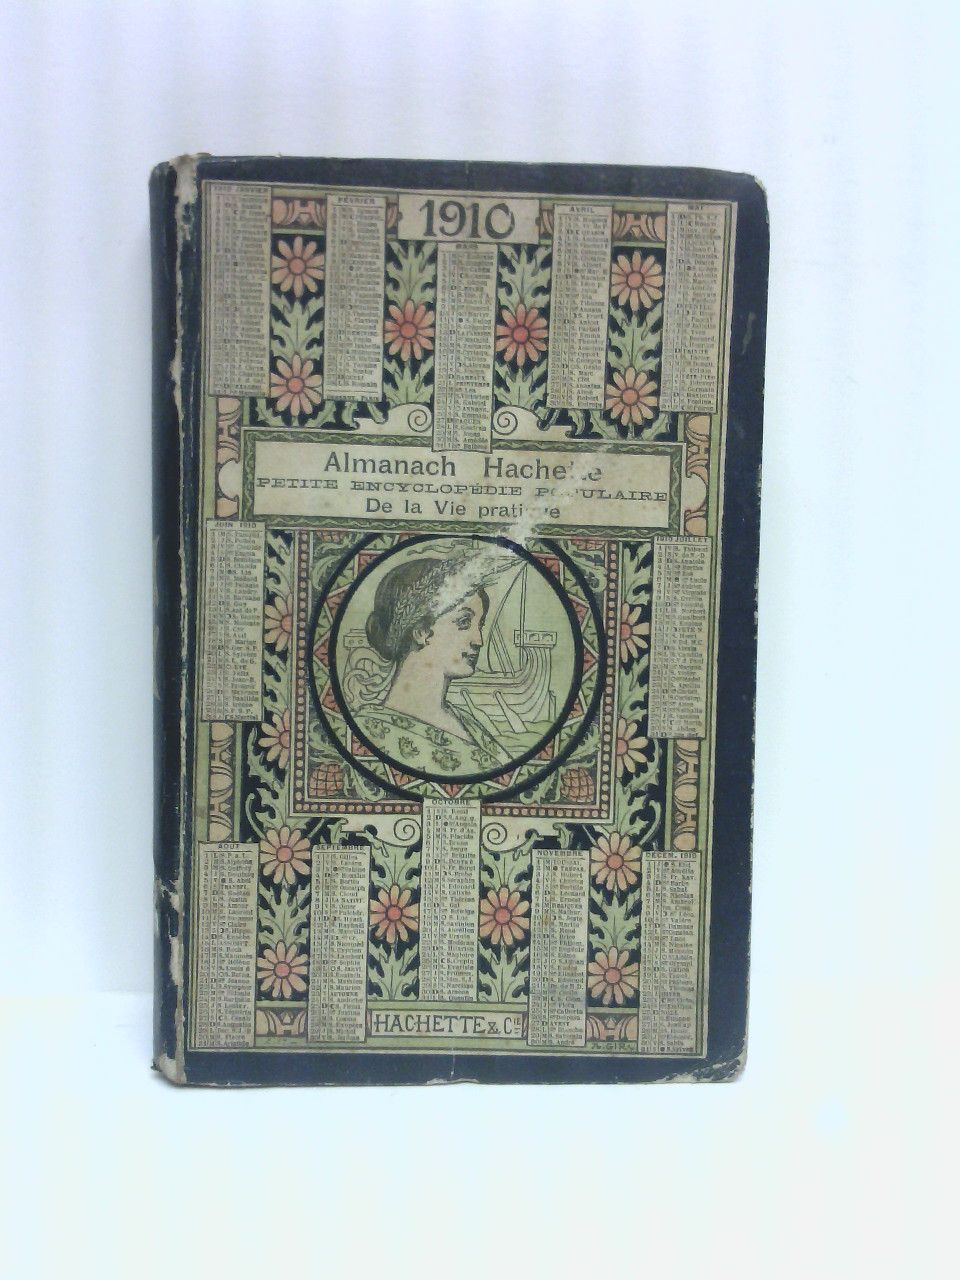 HACHETTE & Cie. - Almanach Hachette: 1910. Petite Encyclopedie Populaire de la Vie Pratique